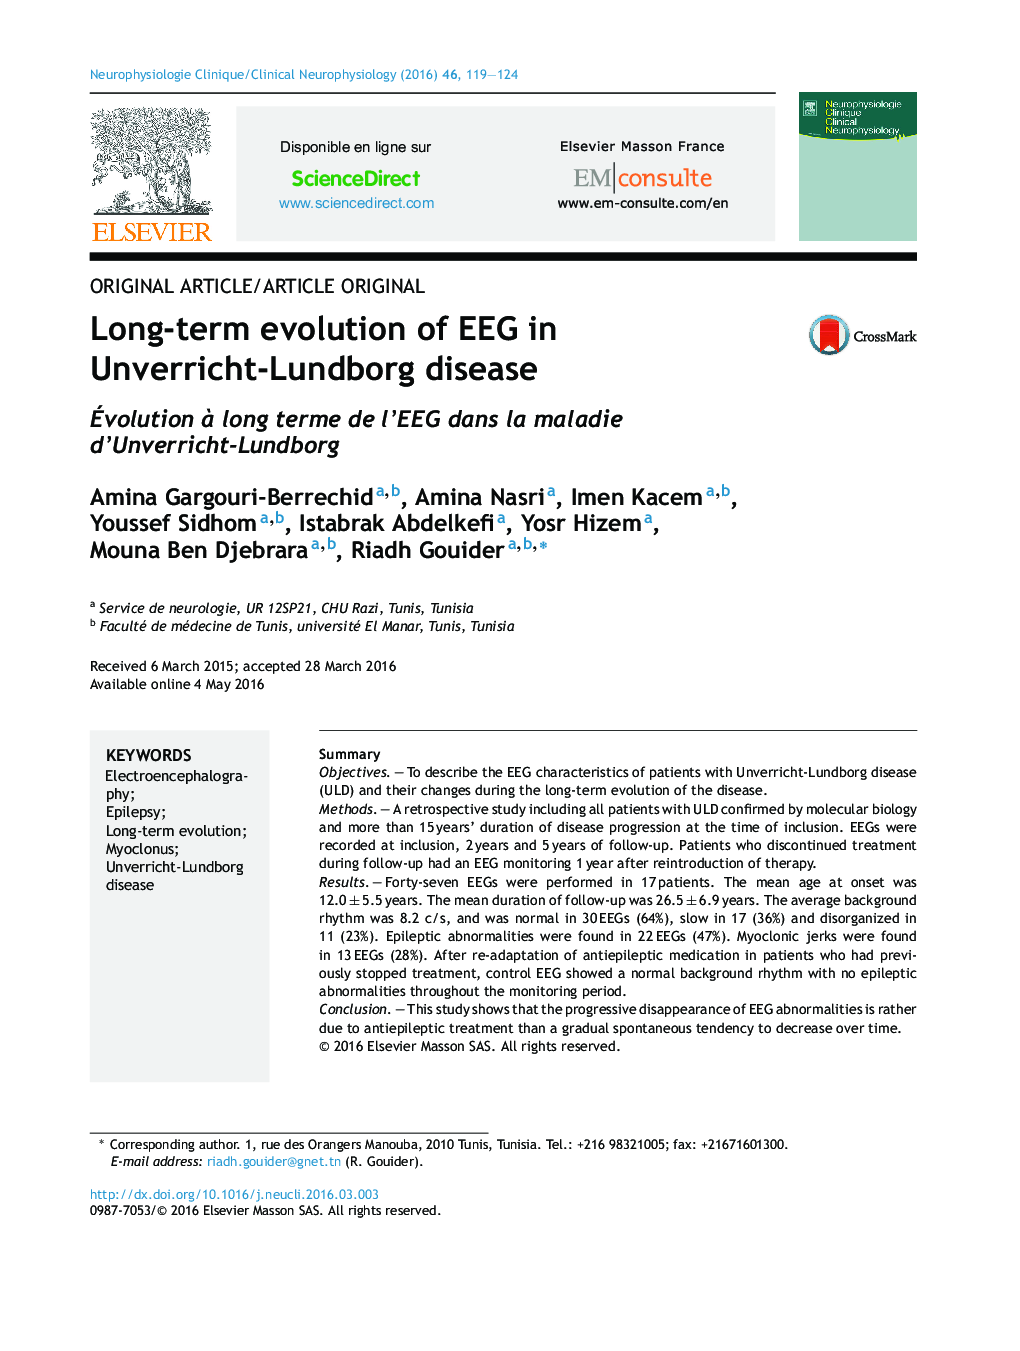 تکامل طولانی مدت EEG در بیماری Unverricht-Lundborg